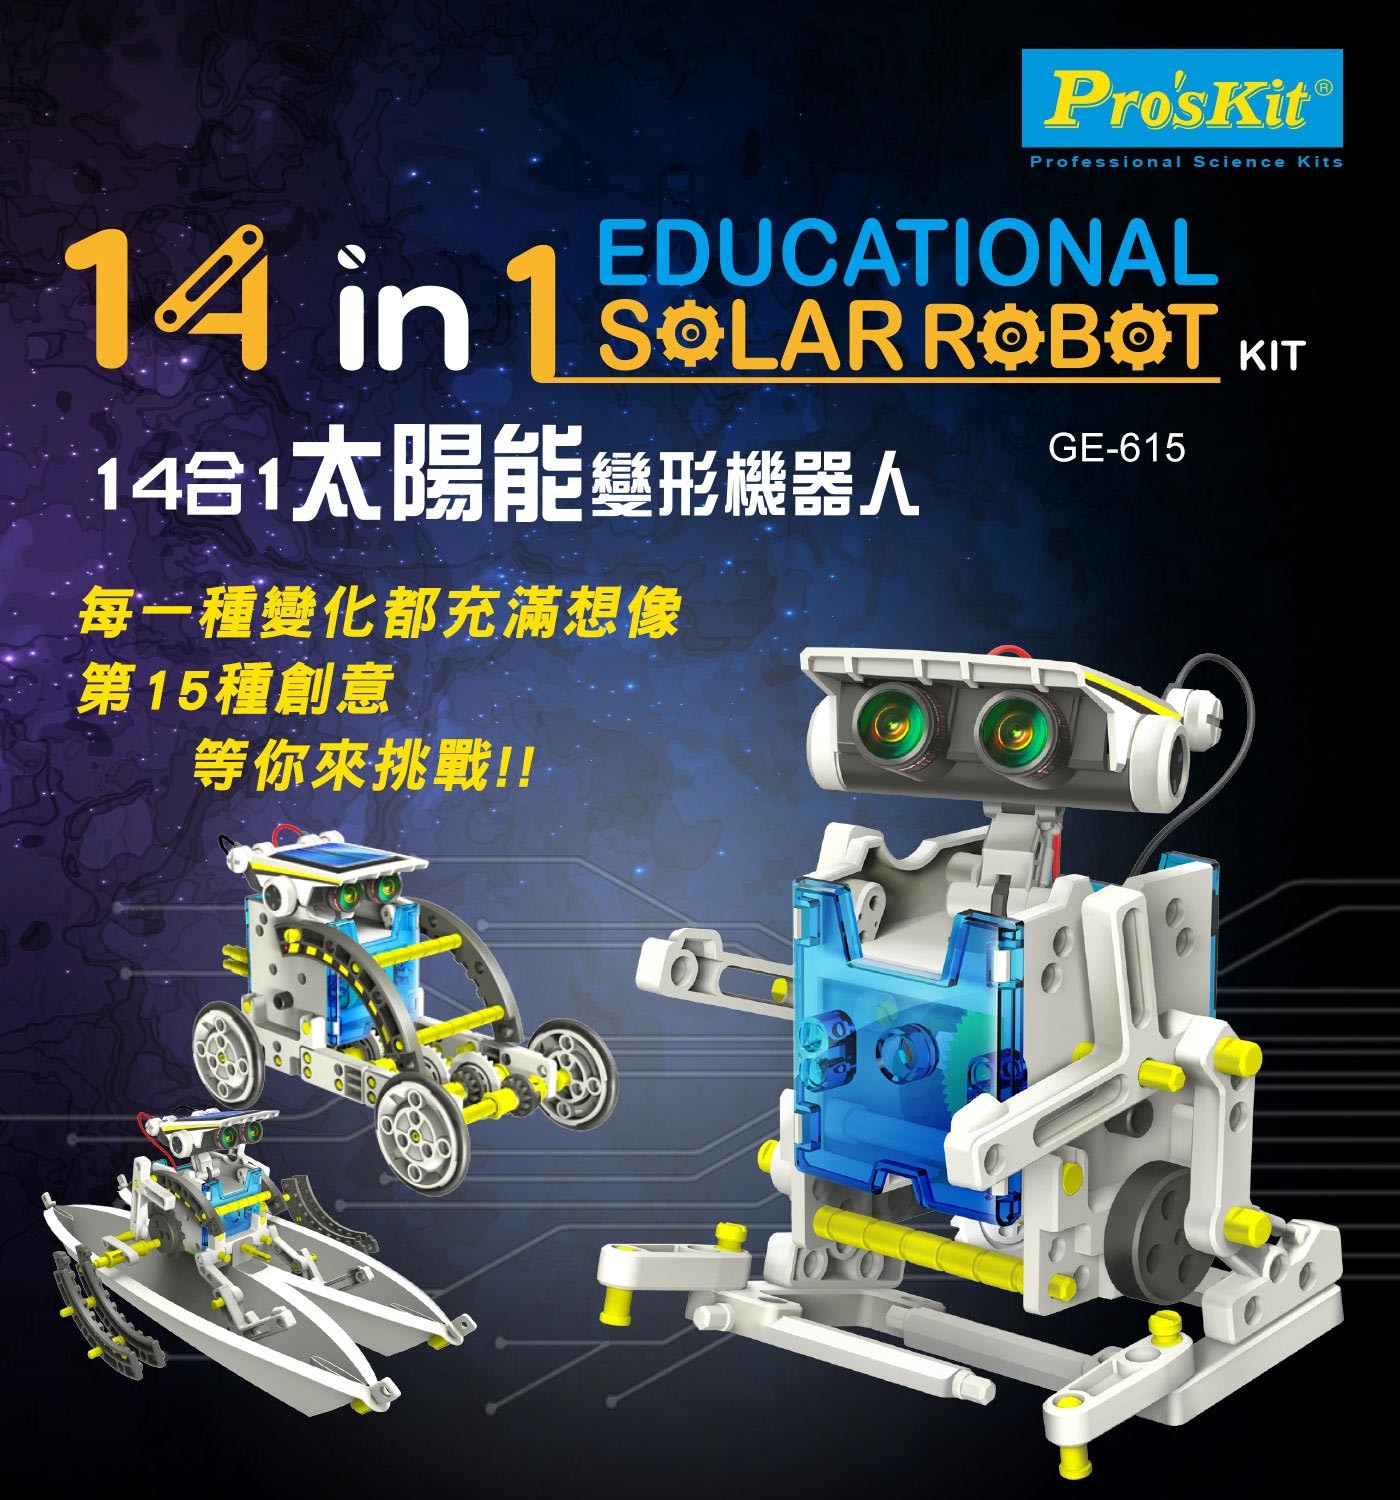 Pro'sKit 寶工14合1太陽能變形機器人GE-615，動手組裝過程，養成耐心、觀察力、閱讀…等習慣，透過模型機構設計，可組裝14種變化，隨時任意更換造型。